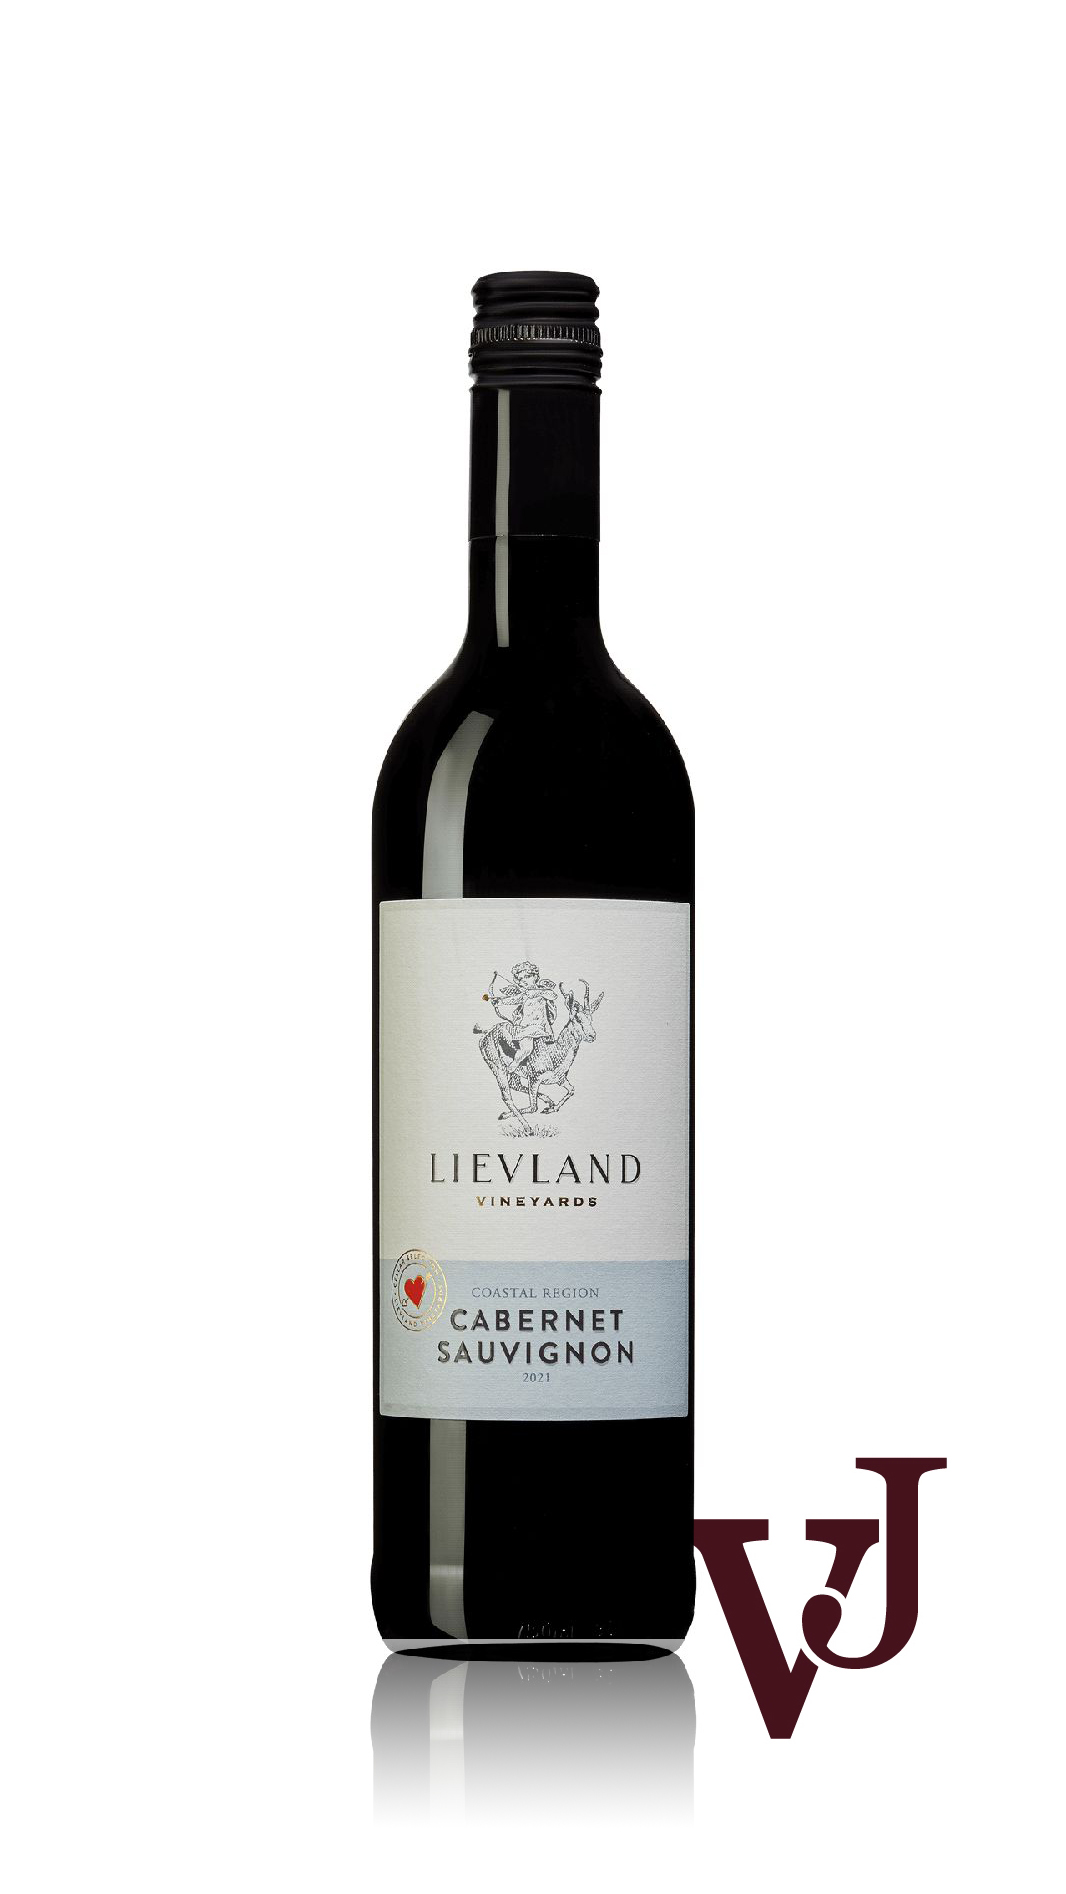 Rött Vin - Lievland Cellar Selection Cabernet Sauvignon 2021 artikel nummer 253401 från producenten Lievland Vineyards från Sydafrika - Vinjournalen.se